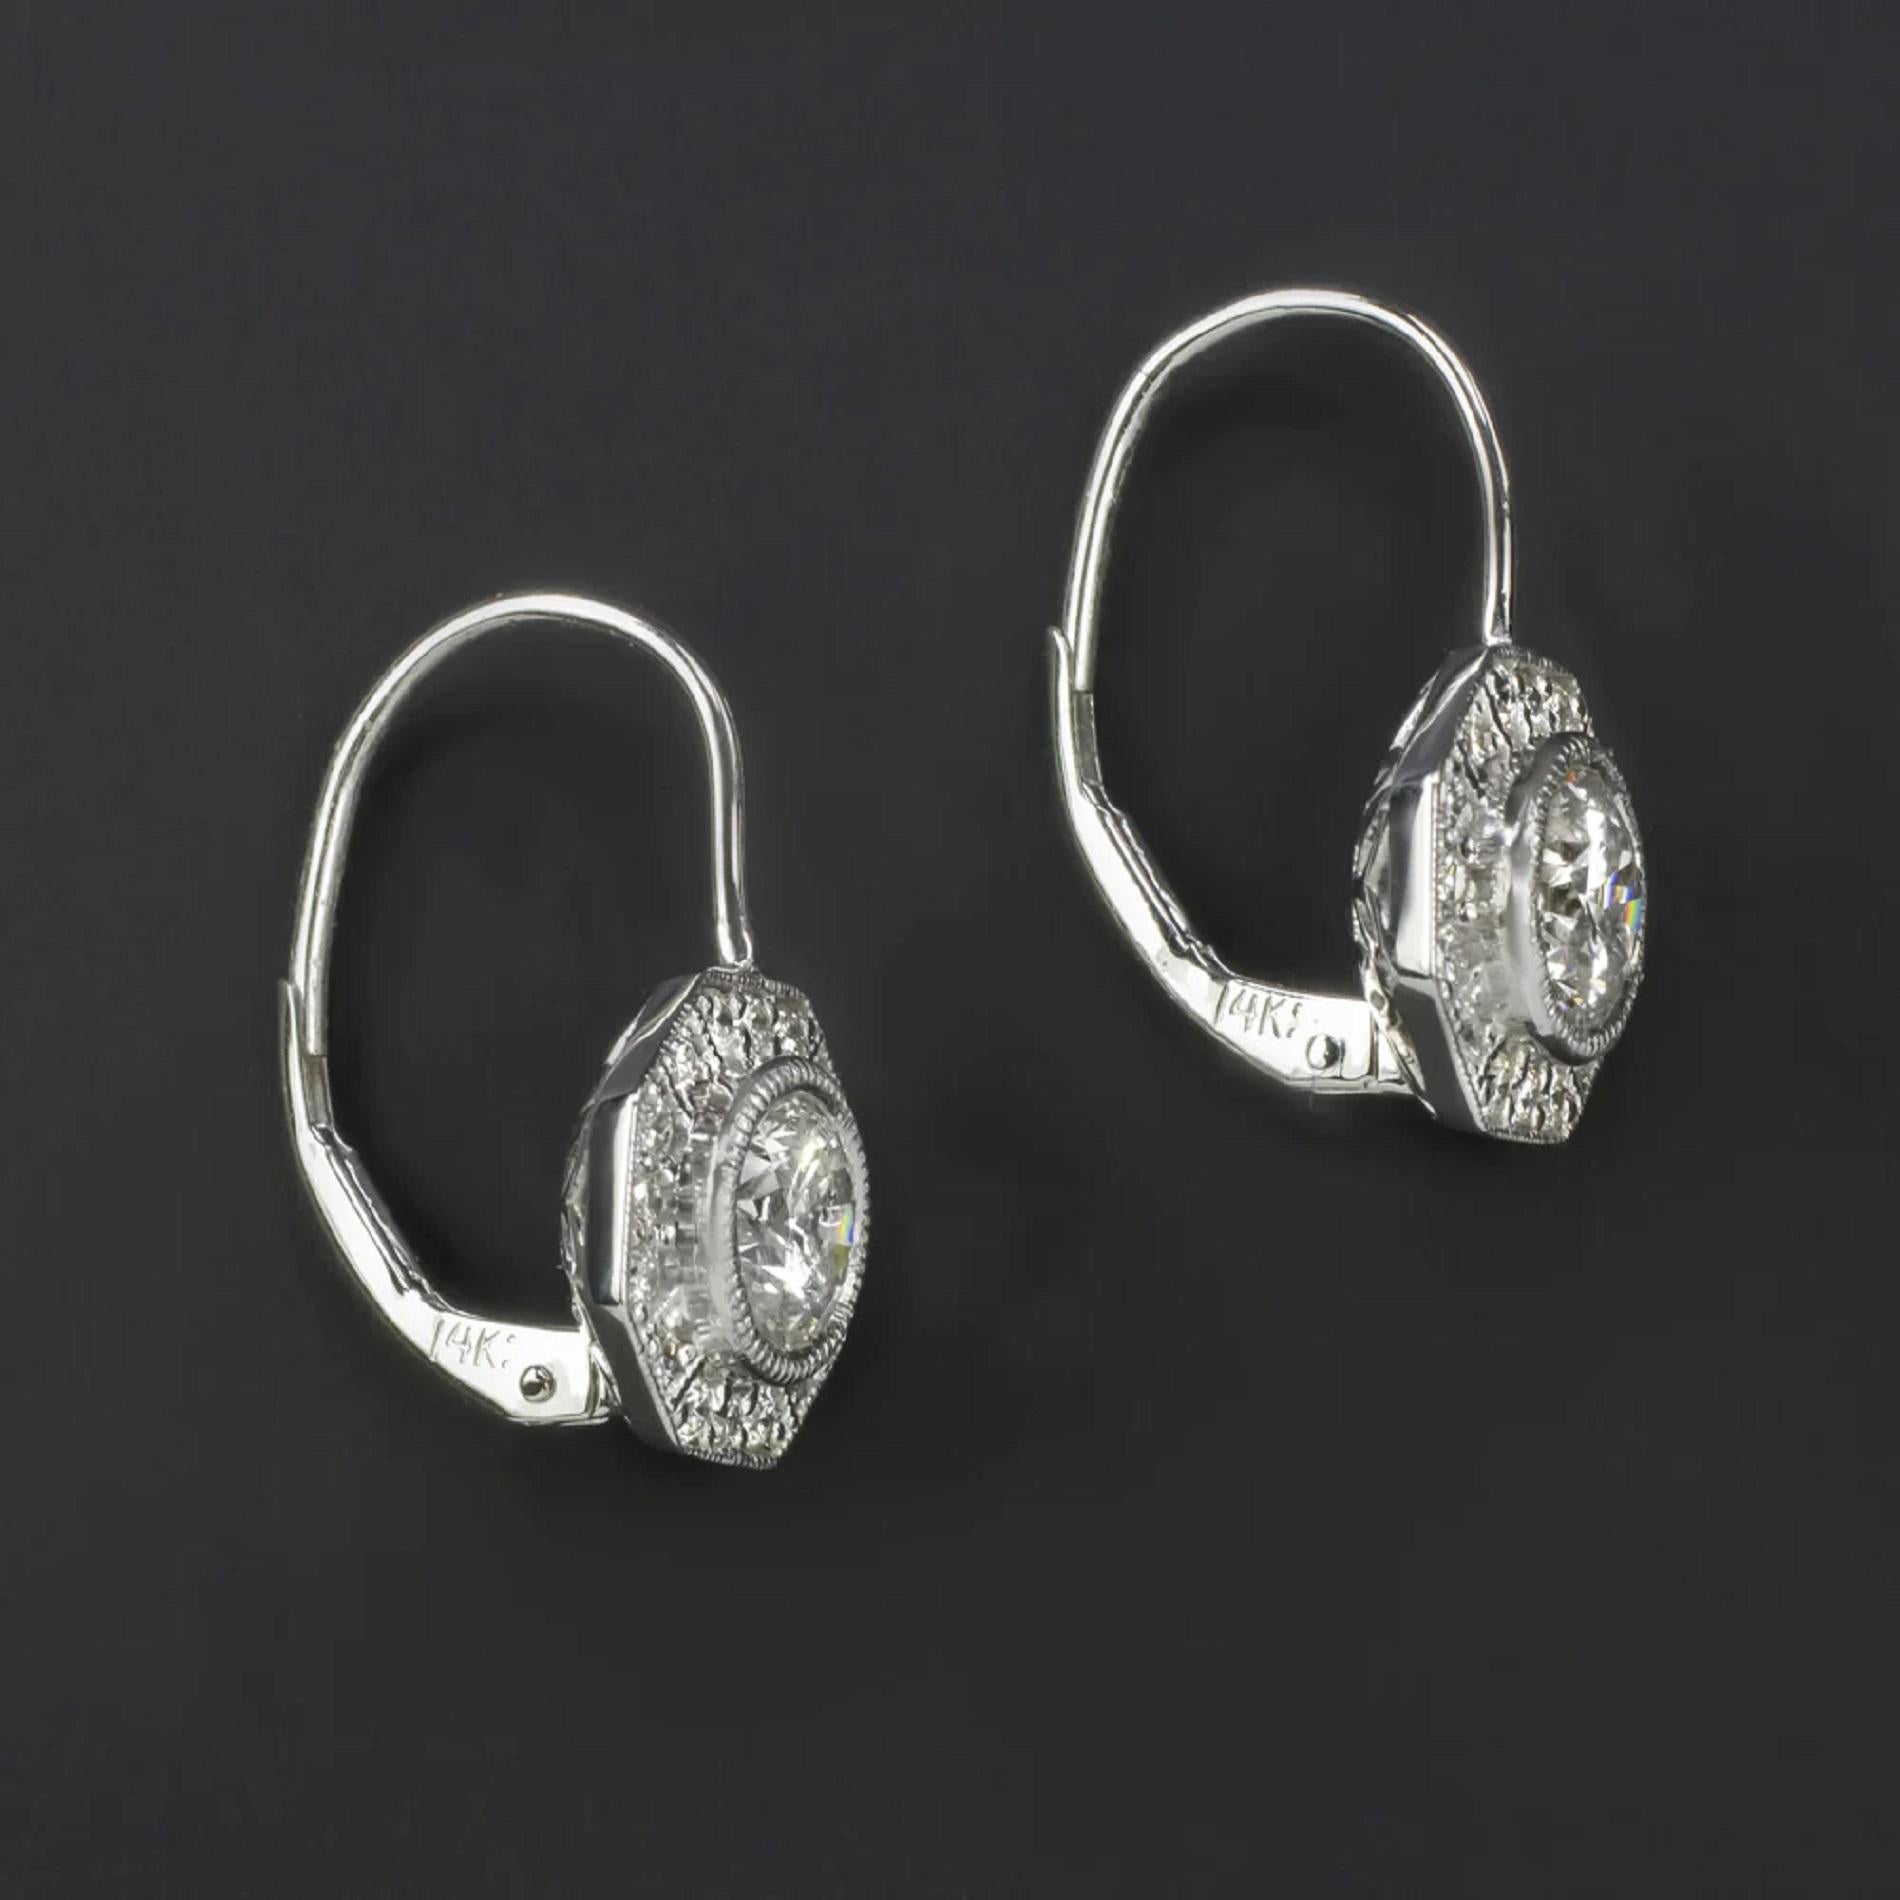 Diese Diamanttropfenohrringe bieten einen ganz klassischen Look mit einem 1,54-karätigen Diamantenpaar, das von achteckigen Halos im Vintage-Stil umgeben ist.

Höhepunkte:

- 1,54ct Paar natürlicher Diamanten als Mittelsteine

- Die Diamanten in der